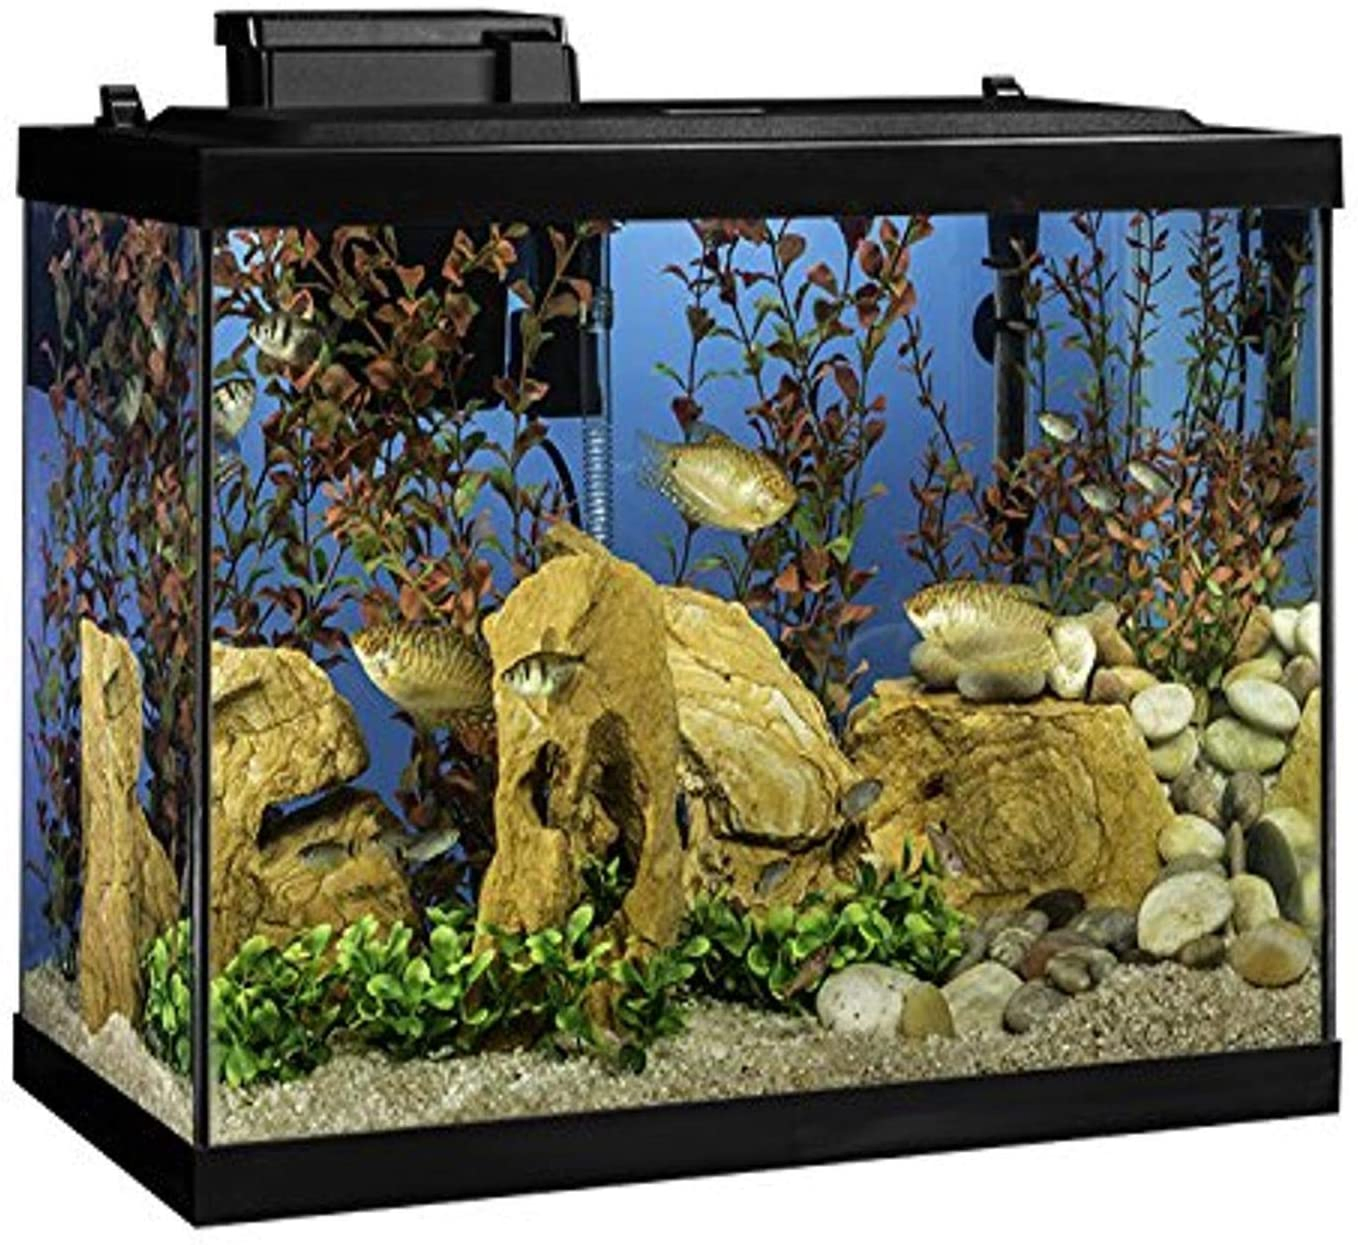 Tetra 20-Gallon Complete Aquarium Kit